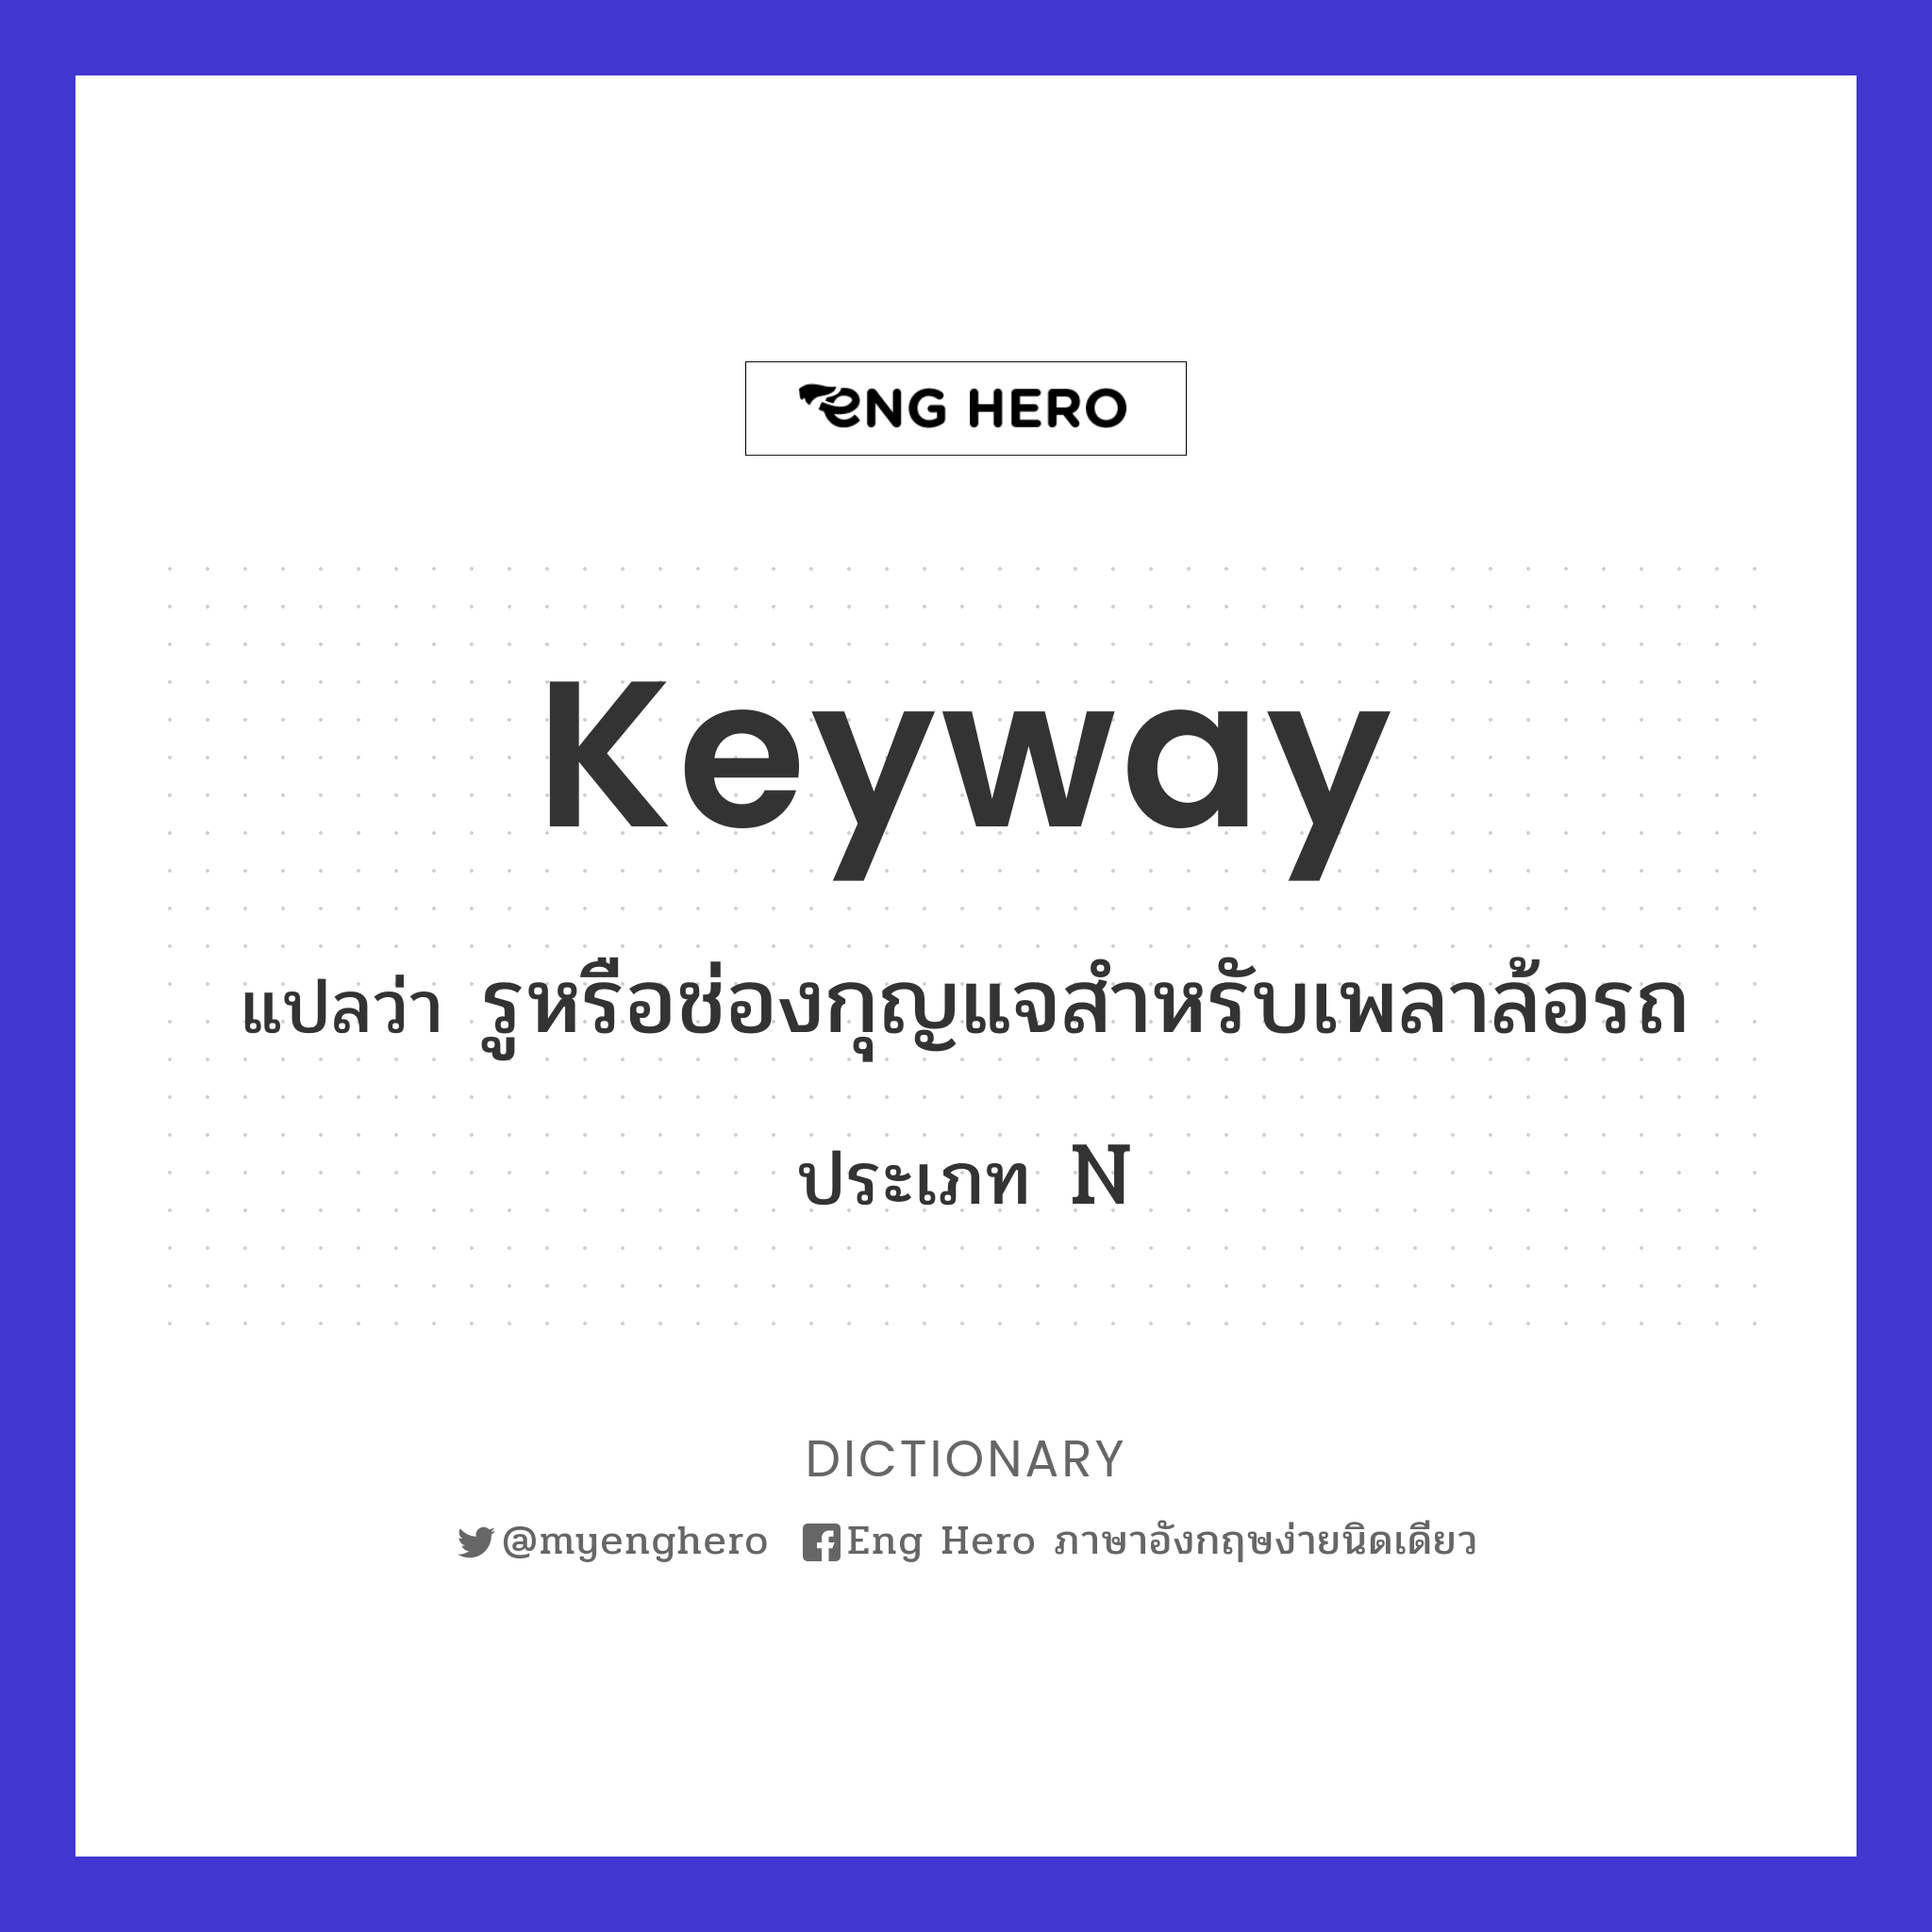 keyway